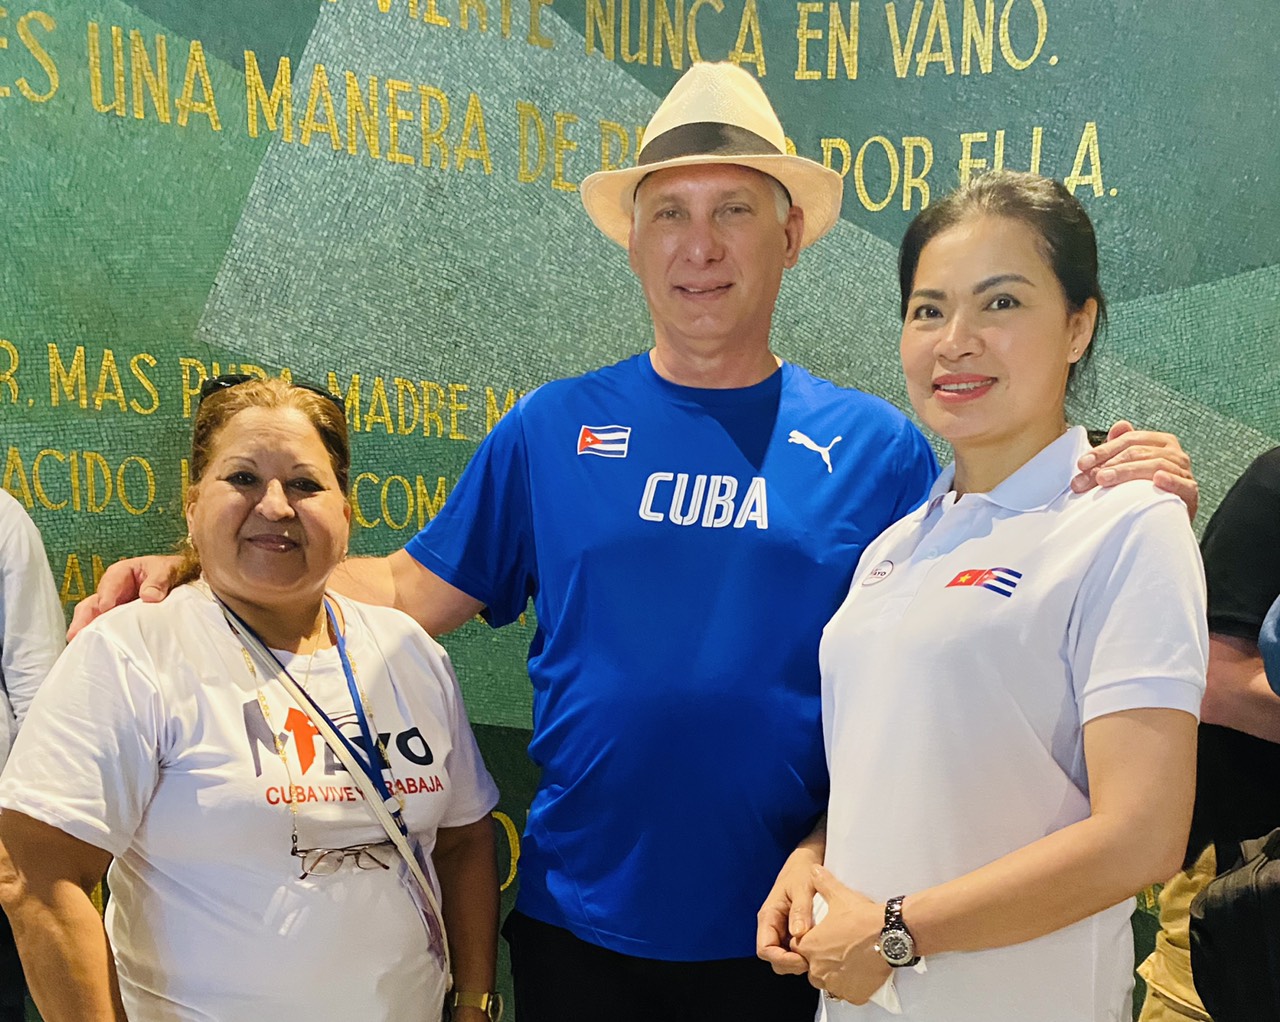 Đoàn đại biểu Hội LHPN Việt Nam tham dự Lễ diễu hành nhân ngày Quốc tế Lao động 1/5 tại Cuba